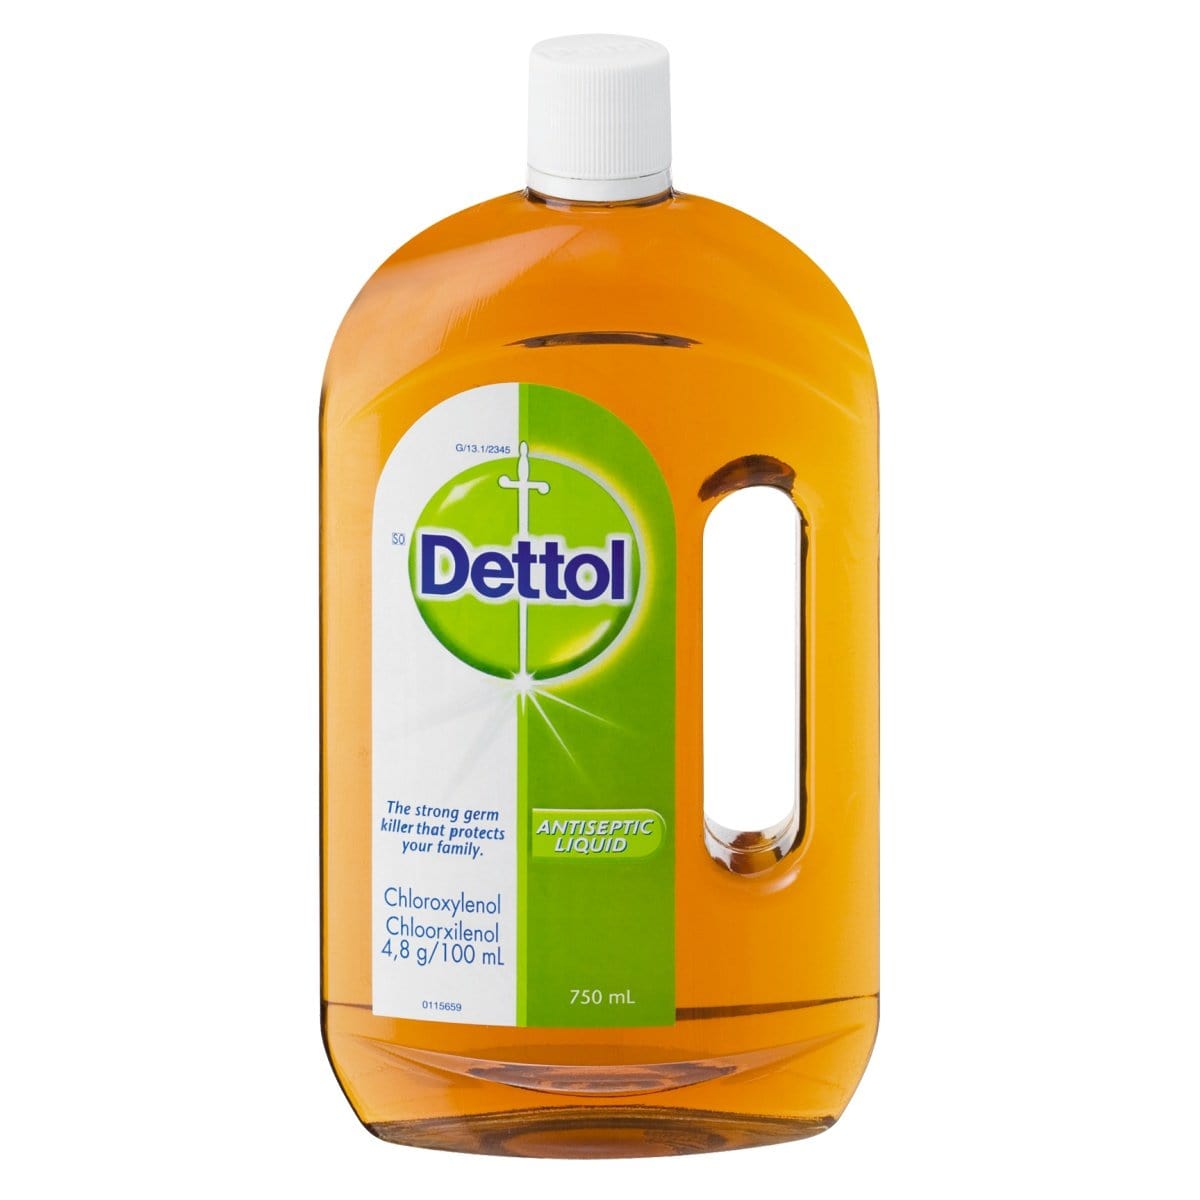 Dettol Health Dettol Antiseptic Liquid, 750ml 6001016400000 719137039